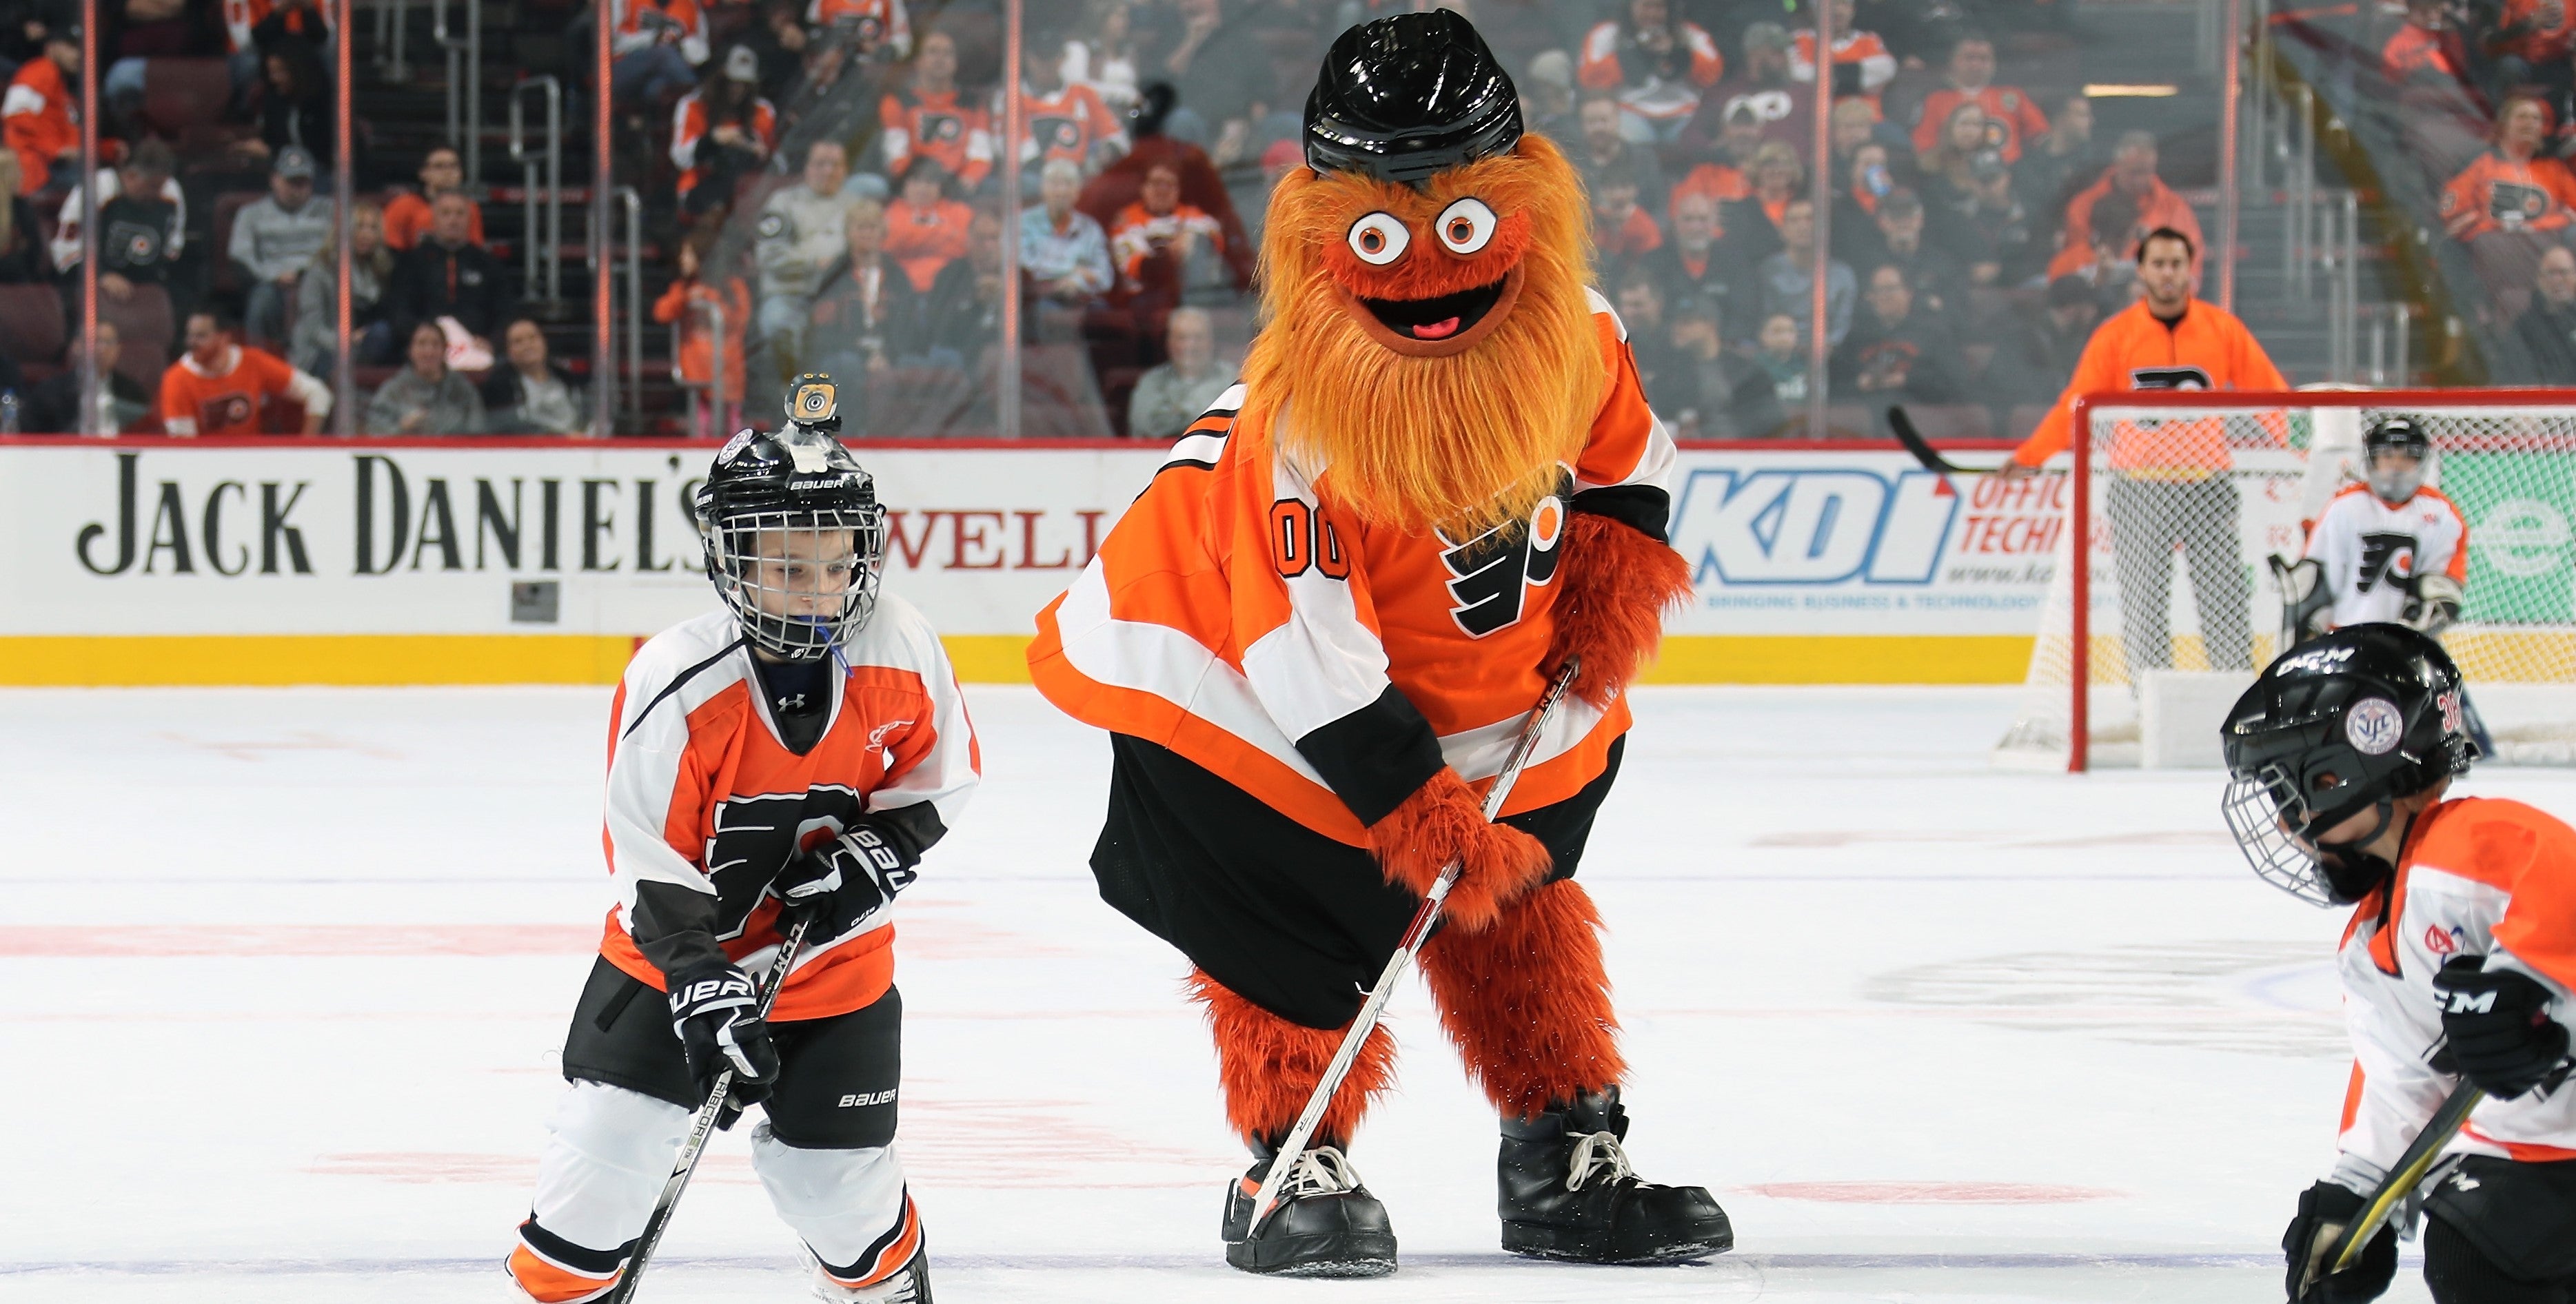 Philadelphia: Ducks vs Flyers at Wells Fargo Center – Call Me Mochelle